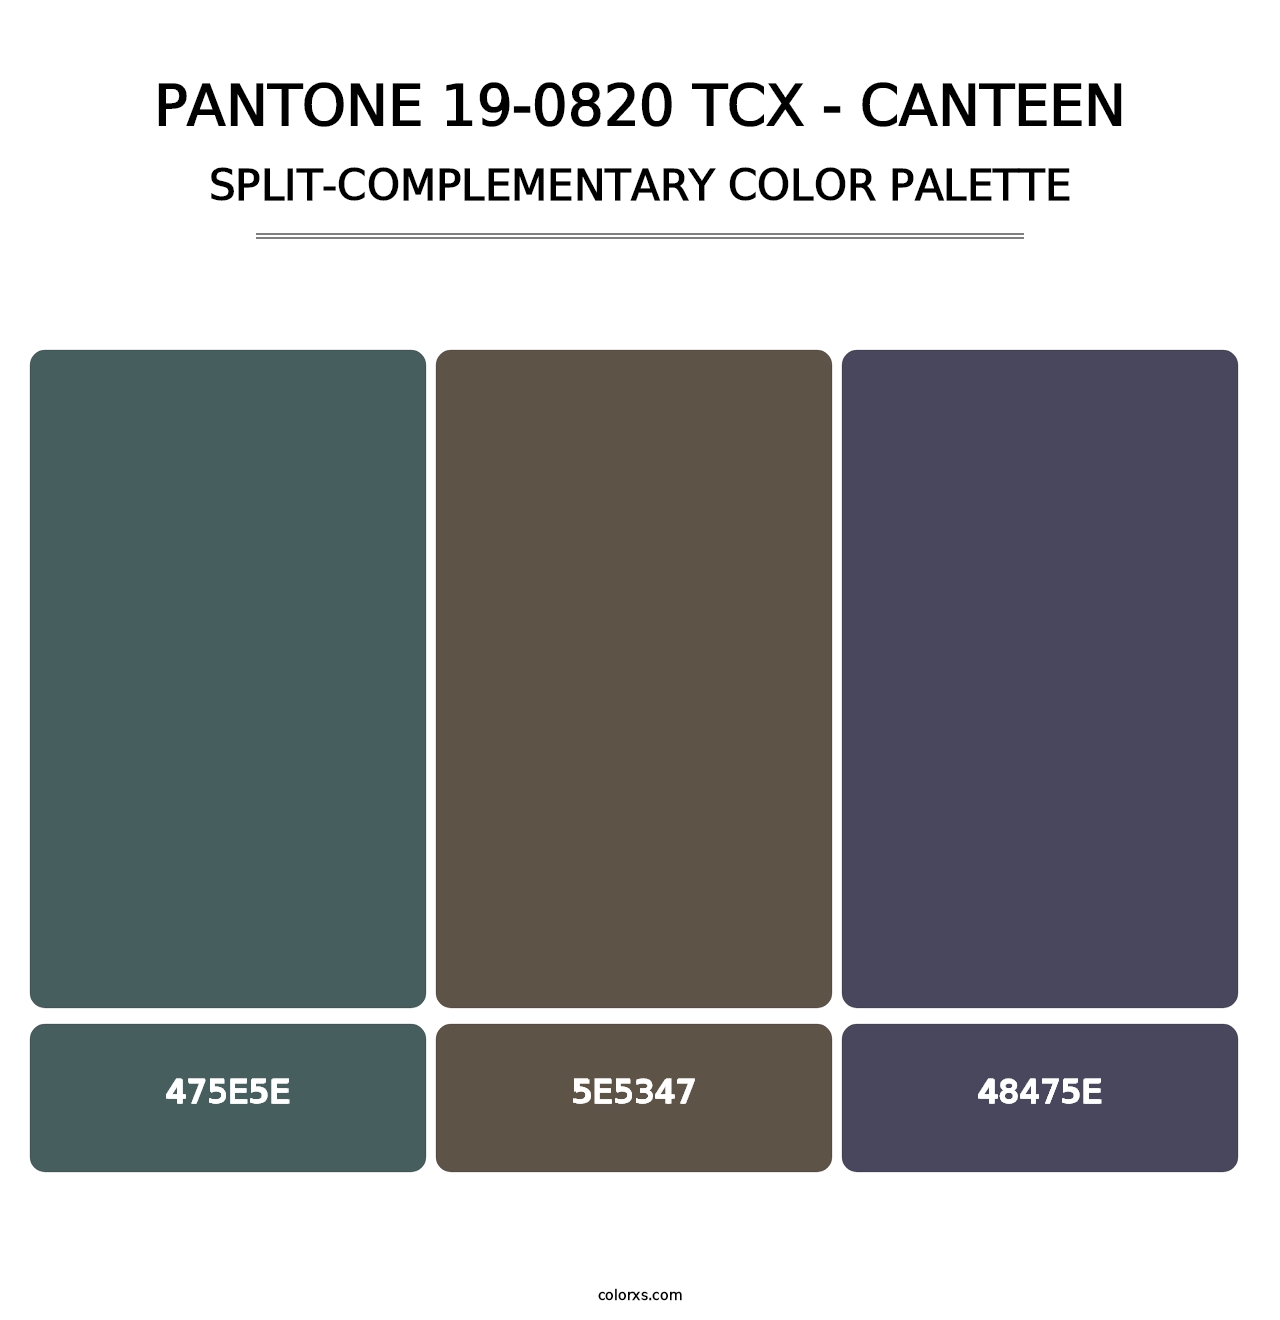 PANTONE 19-0820 TCX - Canteen - Split-Complementary Color Palette